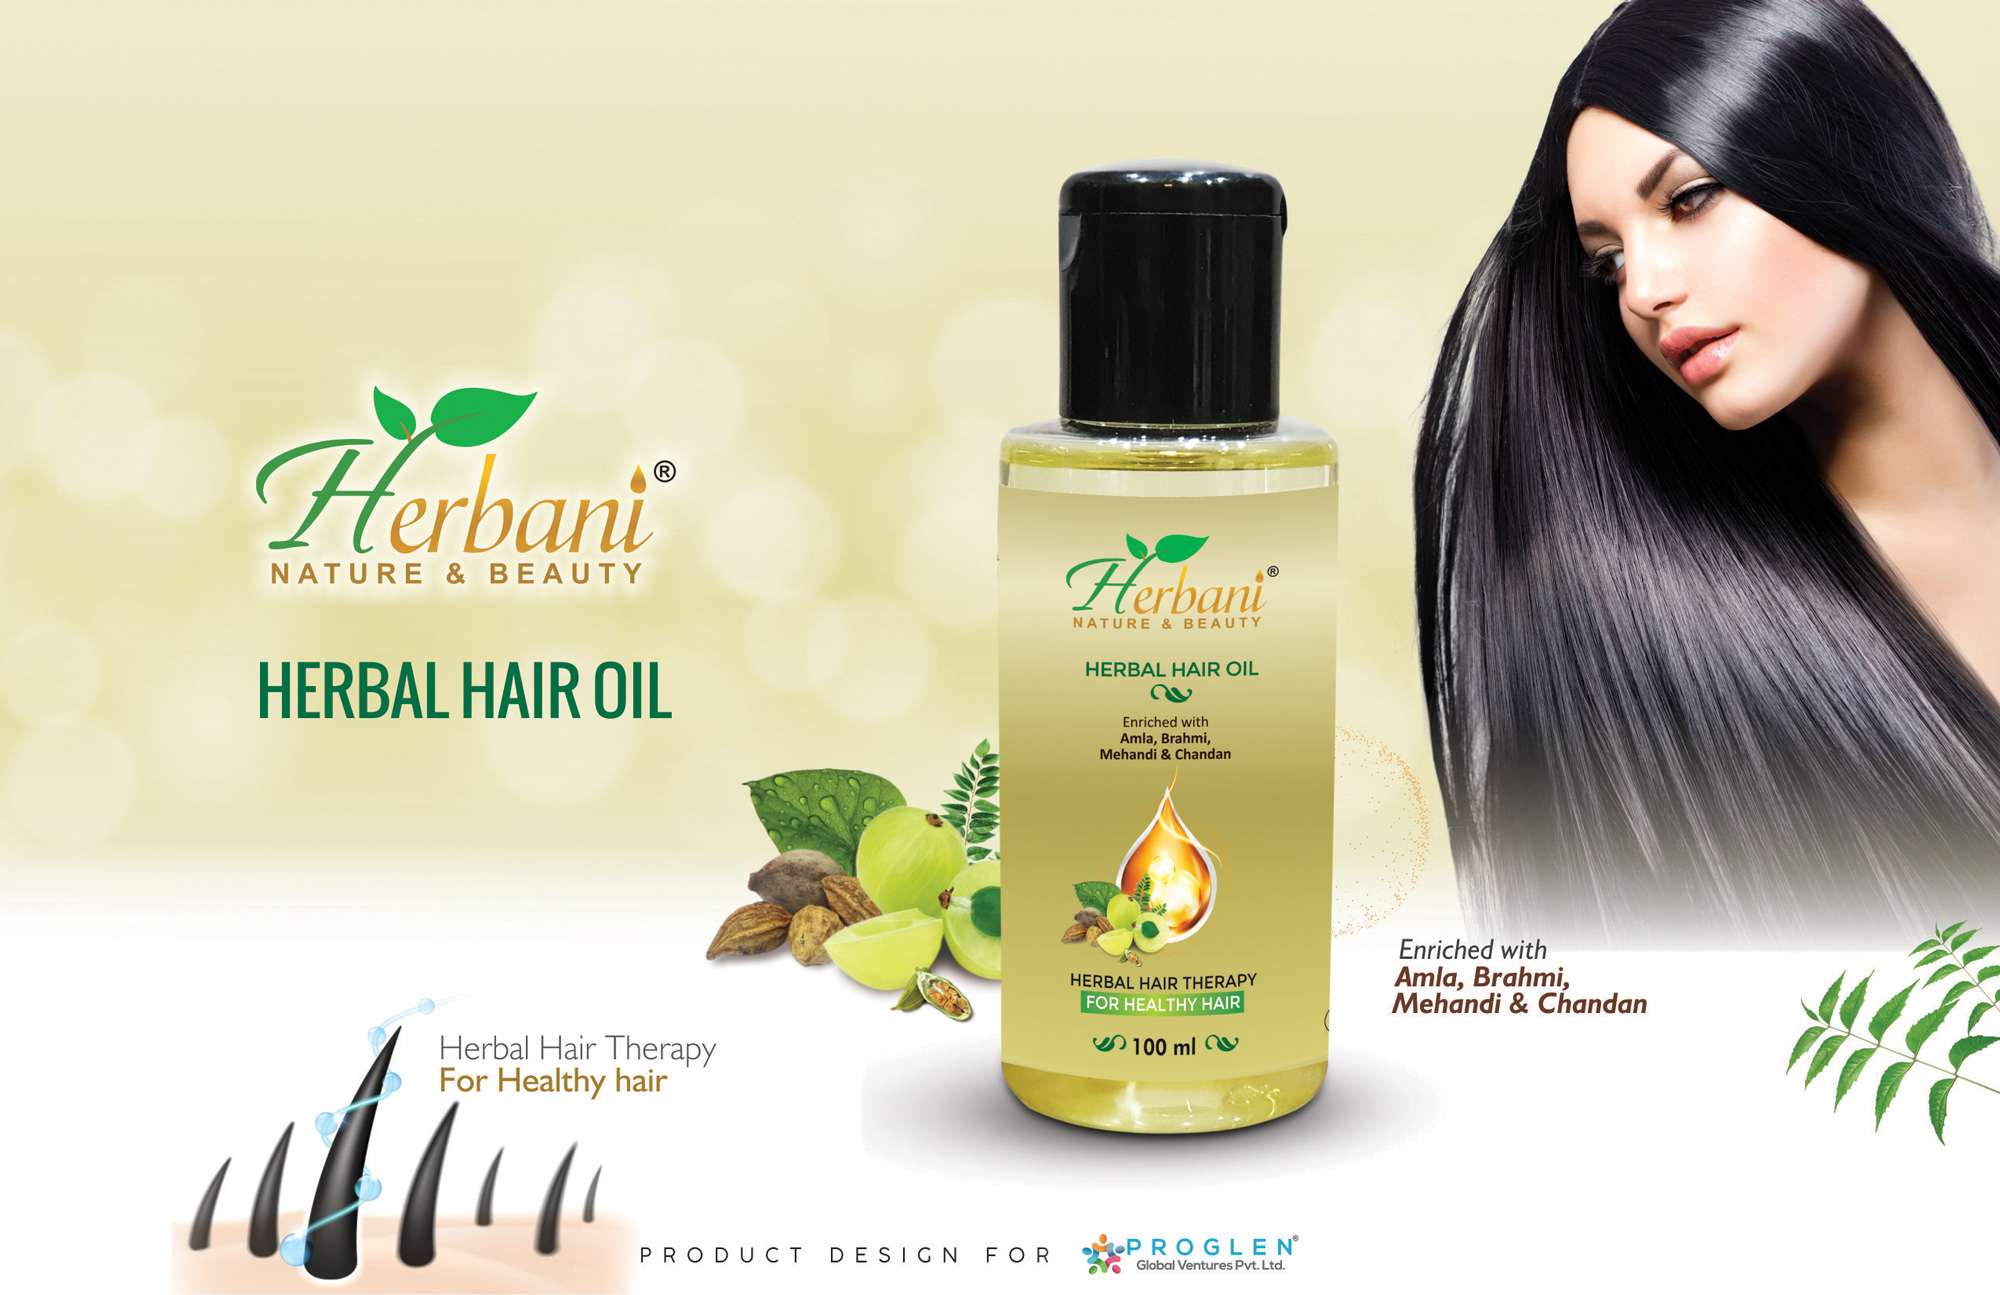 Herbani Herbal Hair Oil